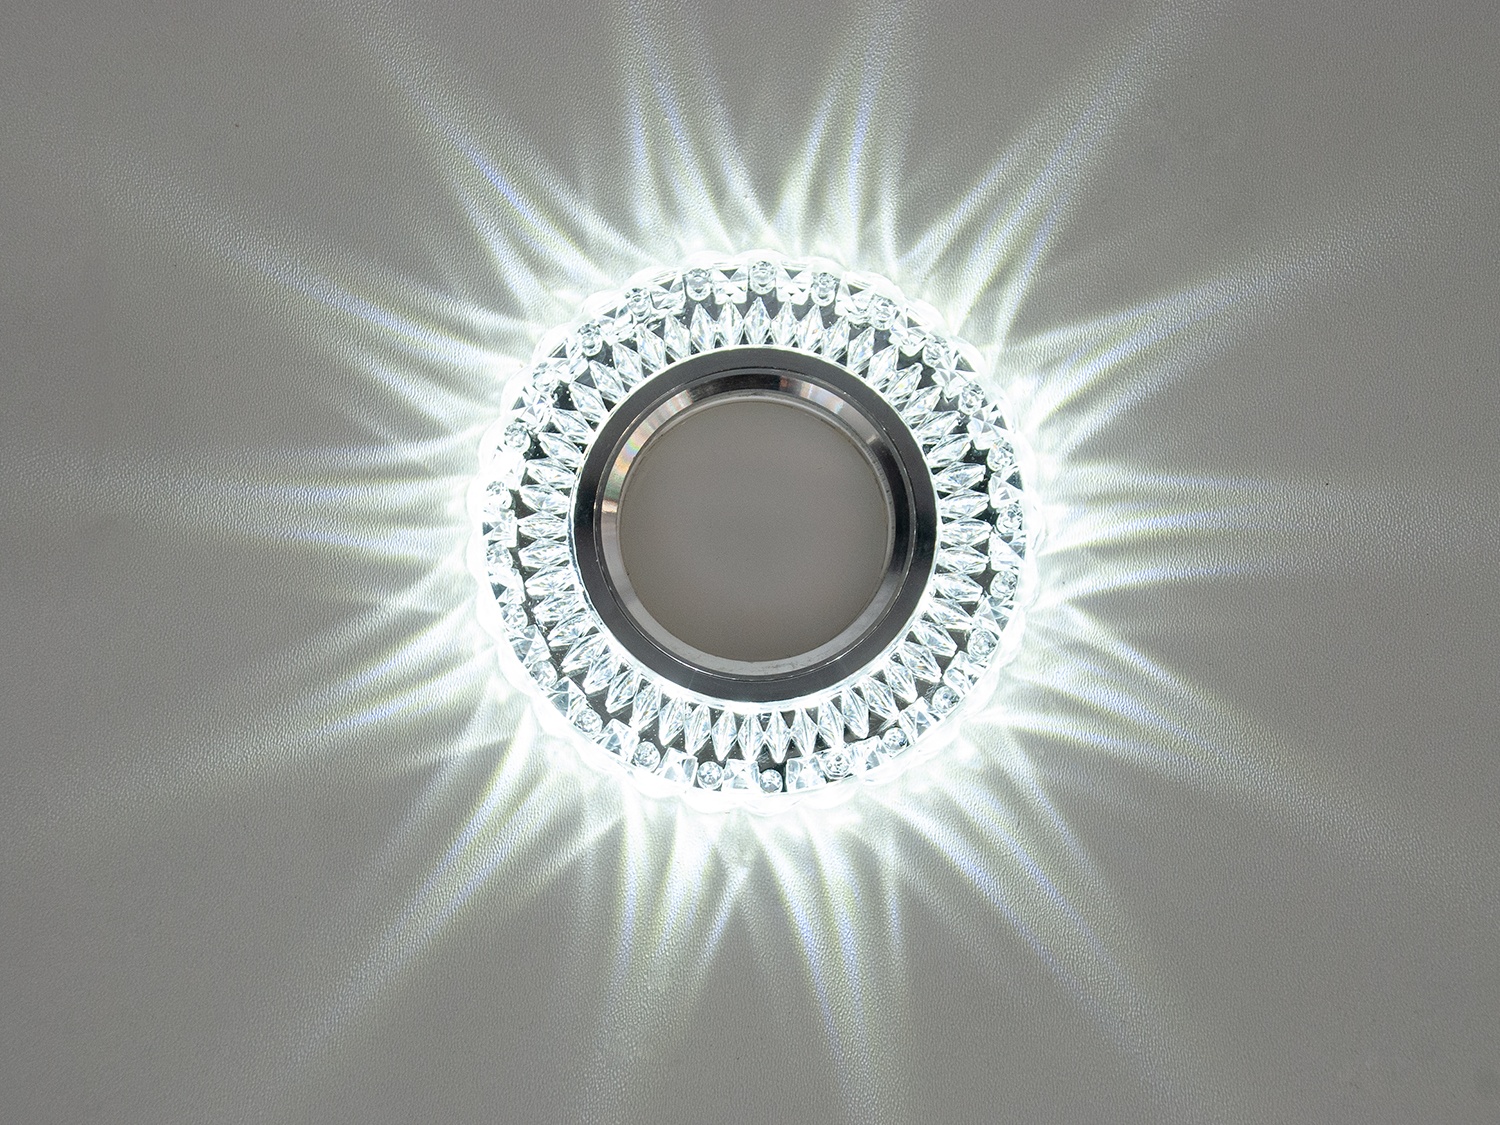    Зазвичай точкові світильники призначаються для підвісних стель і підсвічування різних ніш або робочої поверхні. Конструктивно точковий світильник складається з двох частин: видимої – декоративної та вбудованої – функціональної. Функціональна частина світильників складається з каркаса, куди вставляється джерело світла та кріпиться декоративна частина, а також затискачі, які призначені для кріплення світильника до стелі. Різноманітність декоративної частини точкових світильників із акрилової смоли дозволяє зробити Ваш інтер'єр неповторним. Головні риси сучасних точкових світильників – це рівномірне освітлення всього приміщення з можливістю акцентування необхідних деталей інтер'єру. 
   Точкові світильники, виготовлені з оптичної смоли, найкраще рішення для натяжних стель. Легкий корпус з акрилової смоли з оптичними характеристиками, близькими до кришталю. Стійкий до механічних пошкоджень. Великий вибір моделей та кольорів світильників.
У світильник вбудовано підсвічування потужністю 3Вт (колірна температура 4100K – нейтральний білий).

Лампа MR-16 та трансформатор у комплект не входять.